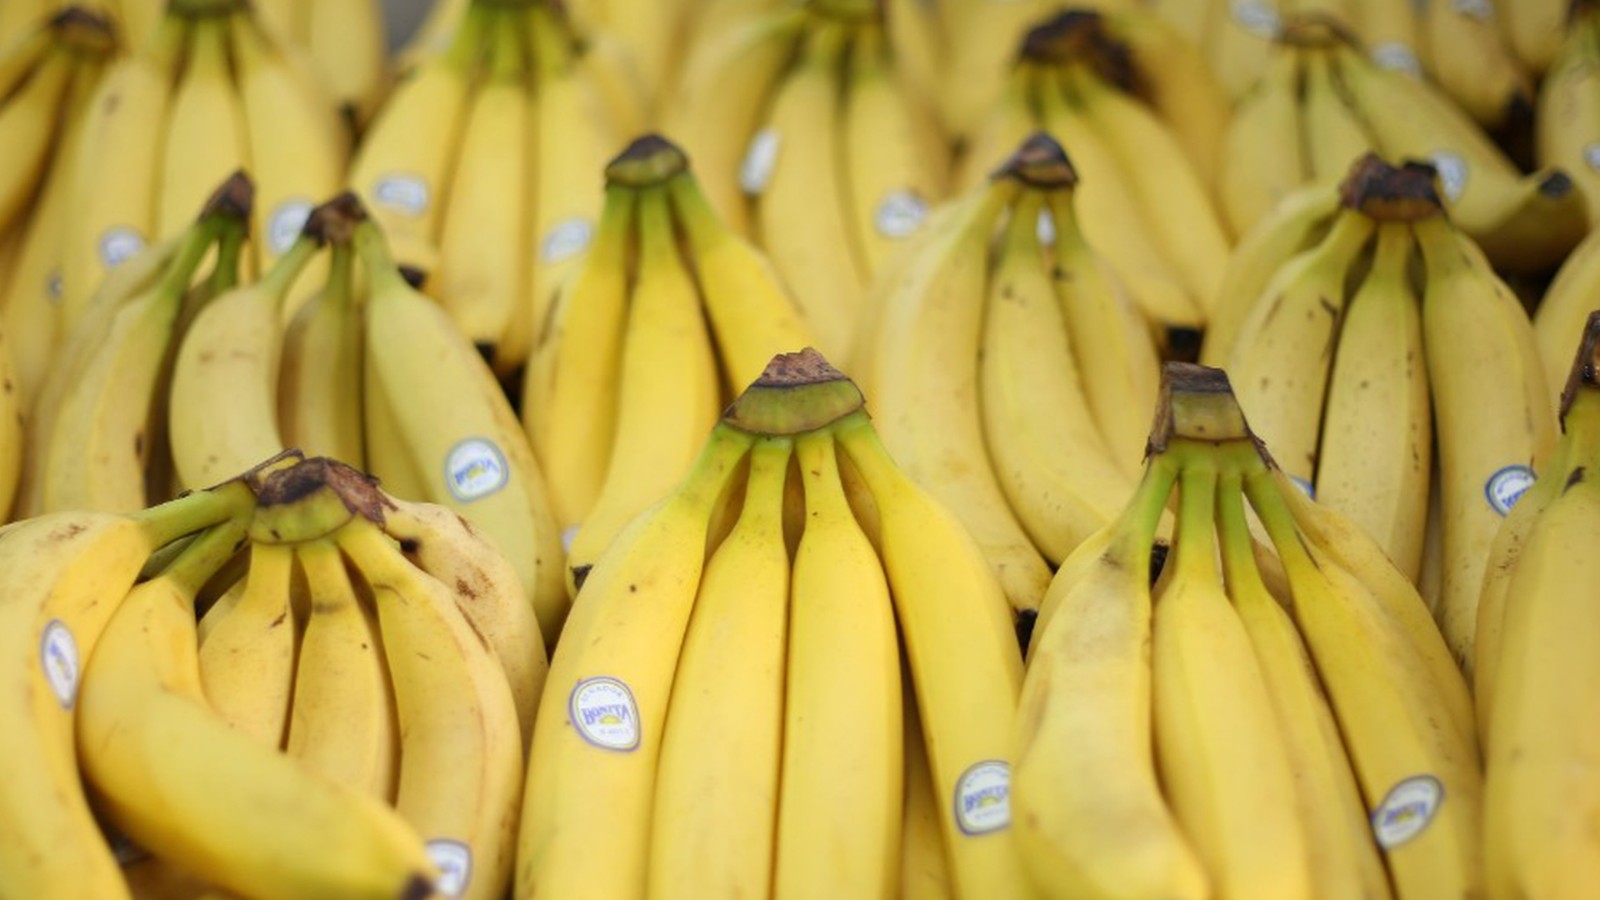 Are bananas going extinct again? CNN Video